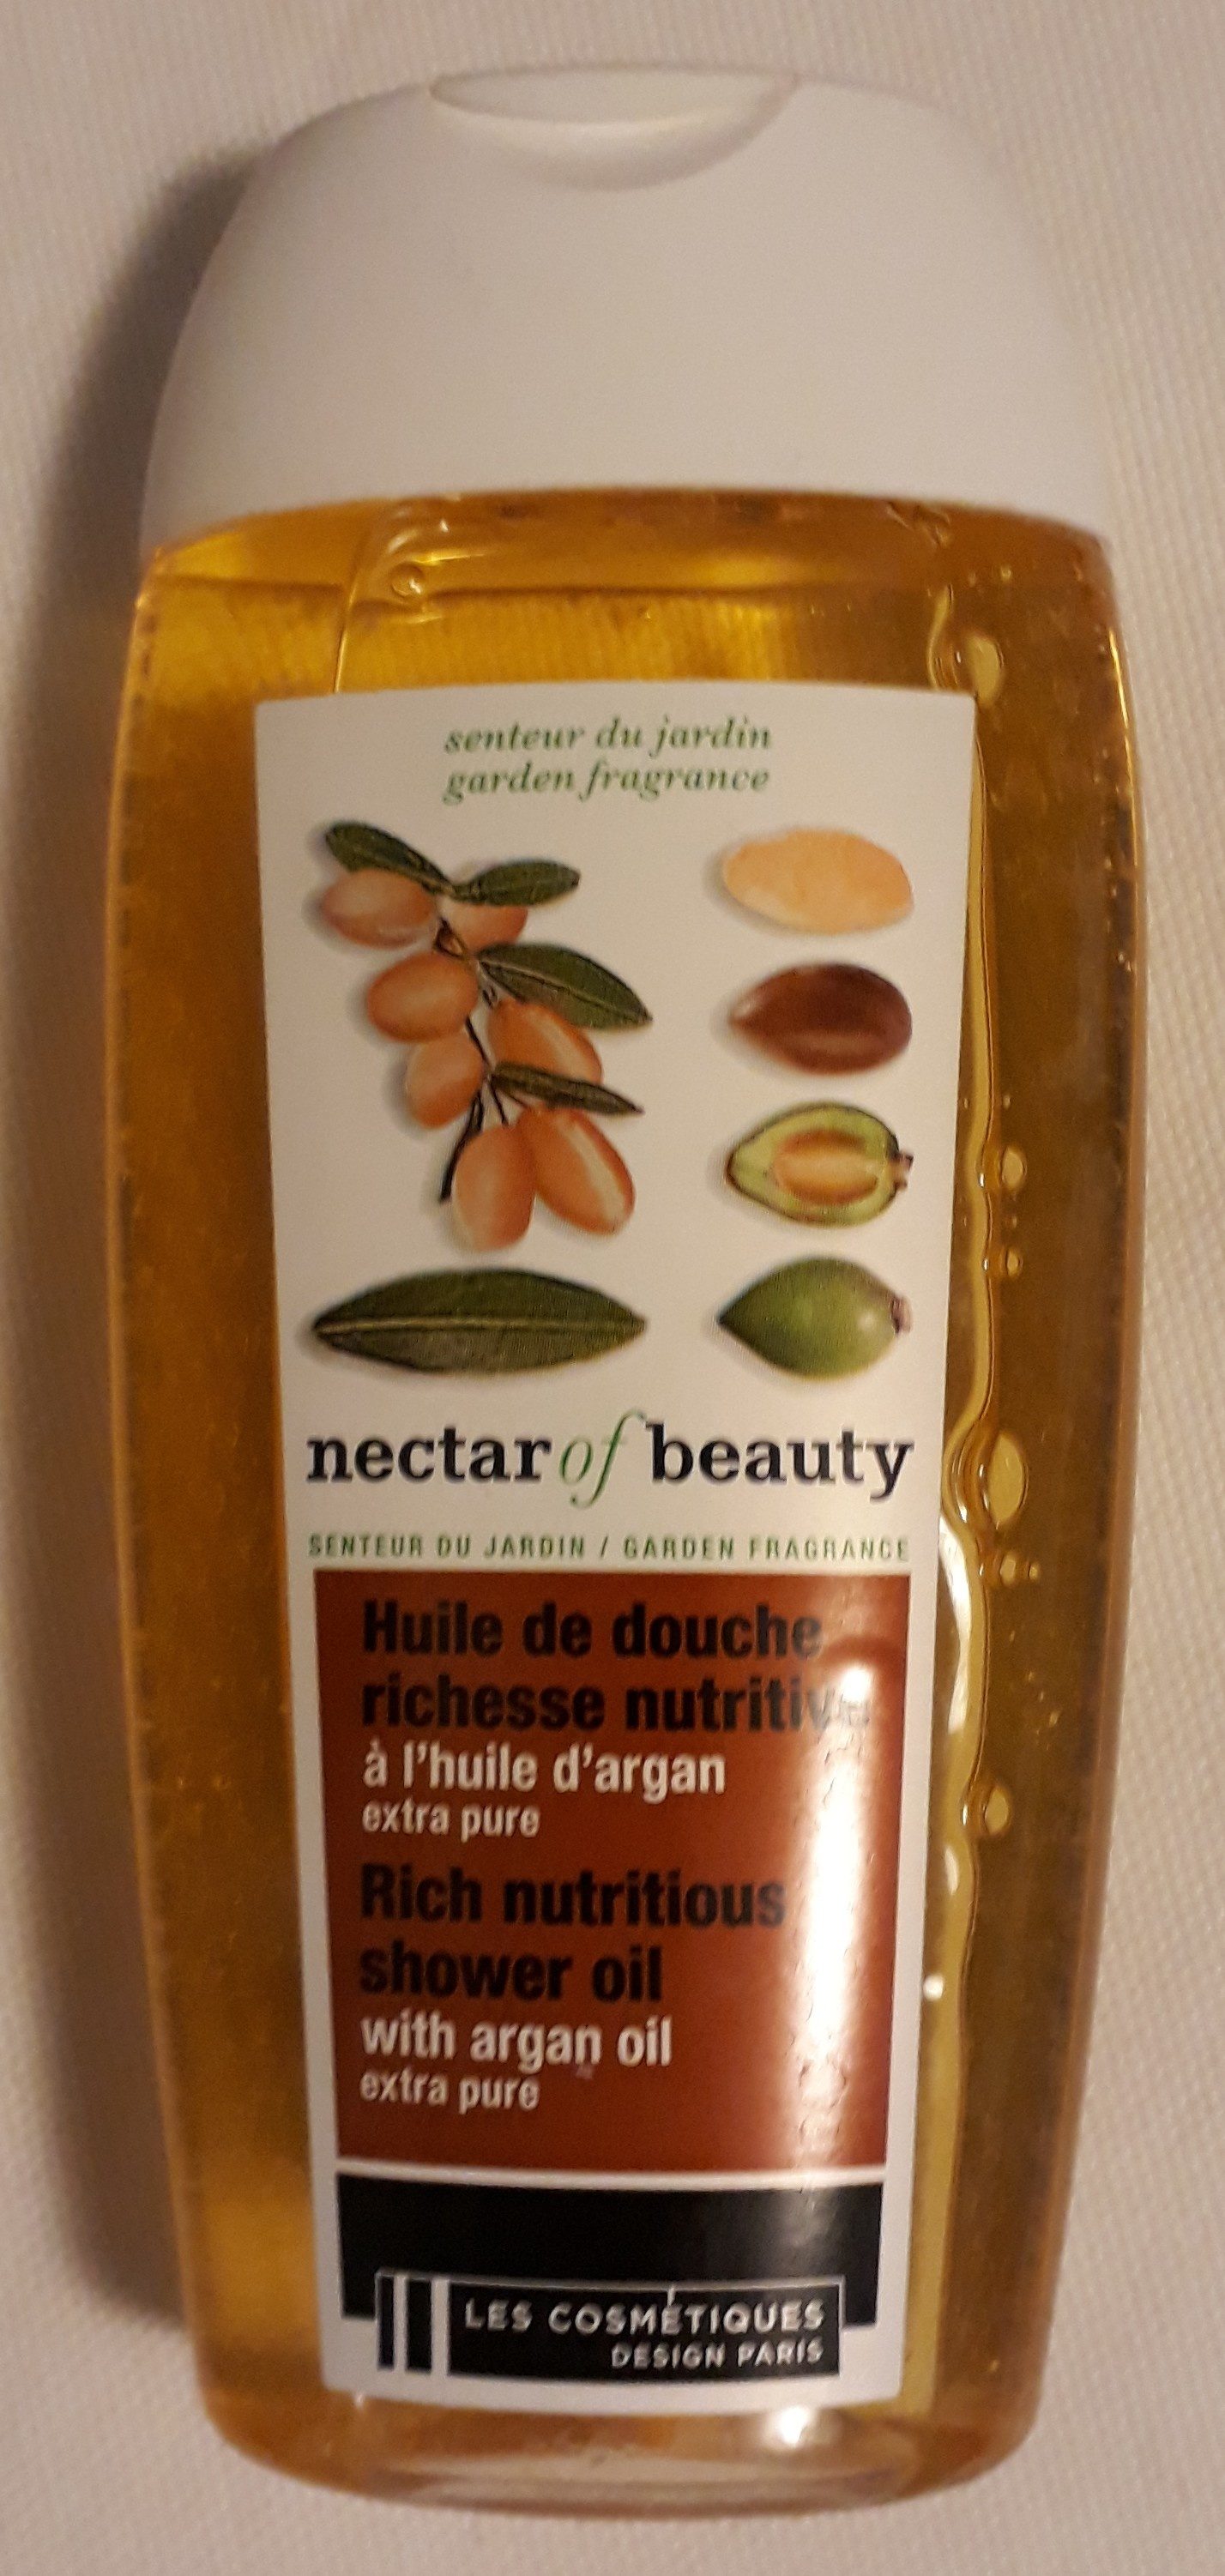 Huile de douche richesse nutritive  à l'huile d'argan - Product - fr